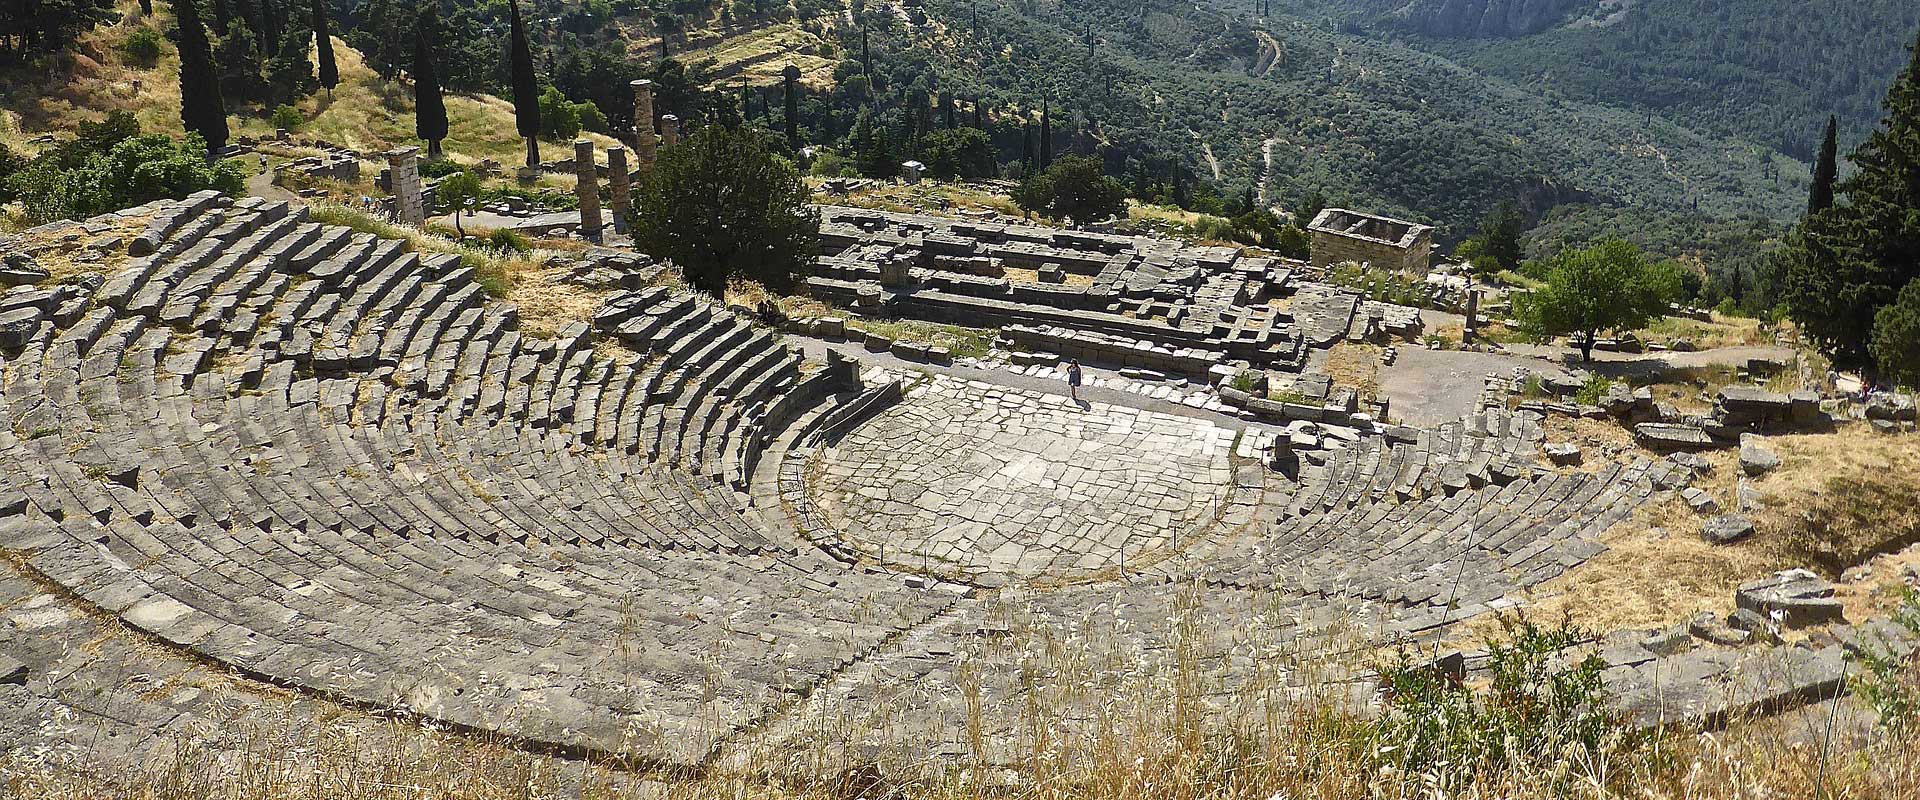 Delphi tour